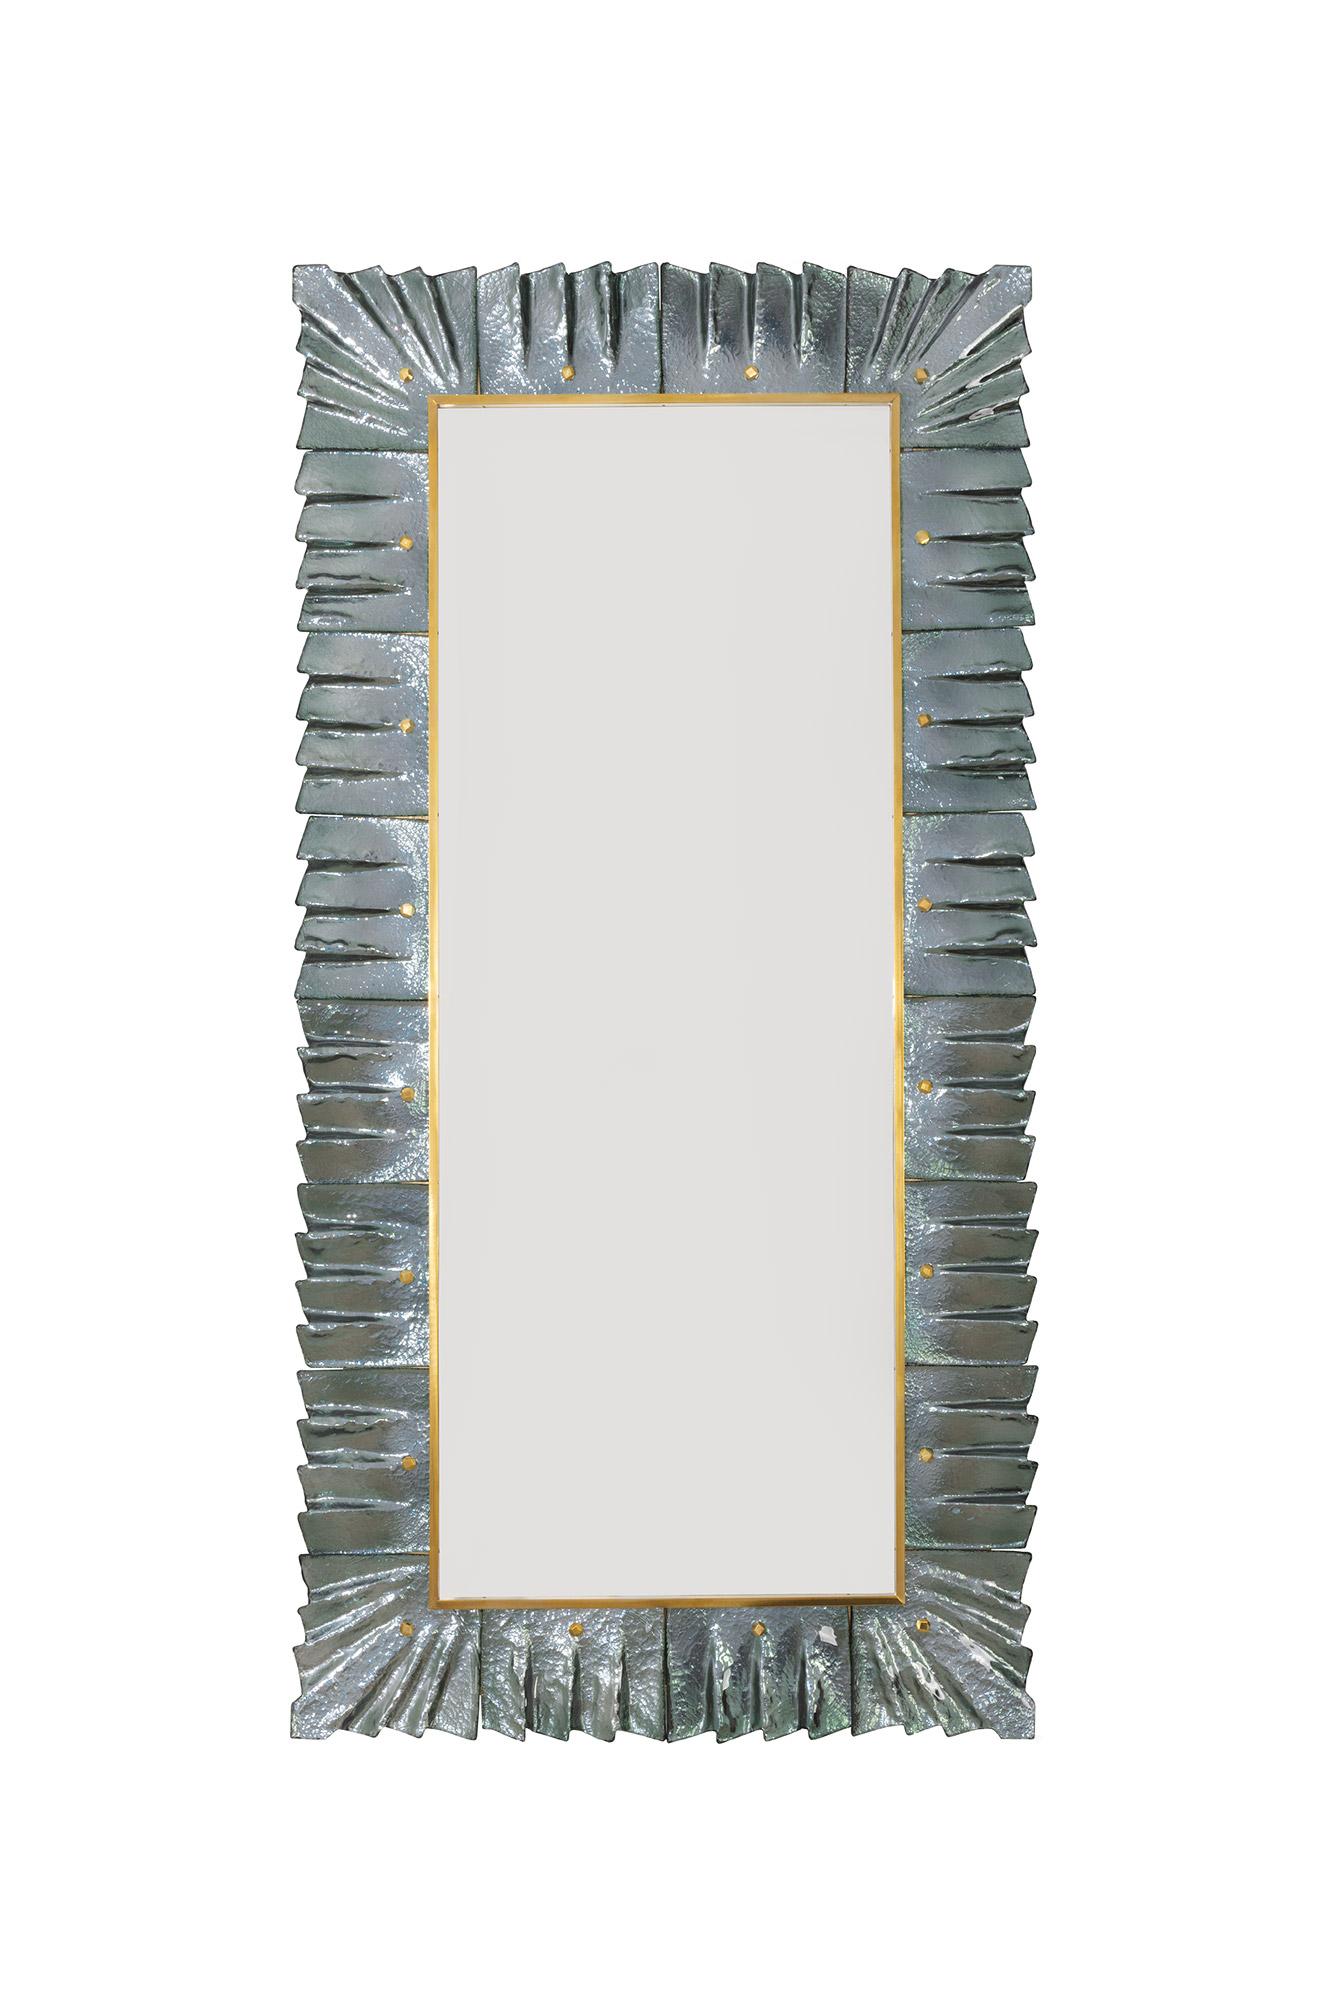 Paire de grands miroirs rectangulaires de Murano en verre vert de mer sarcelle et encadrés de laiton, en stock. 
Plaque de miroir rectangulaire entourée de carreaux de verre ondulés de couleur vert de mer sarcelle retenus par des cabochons en